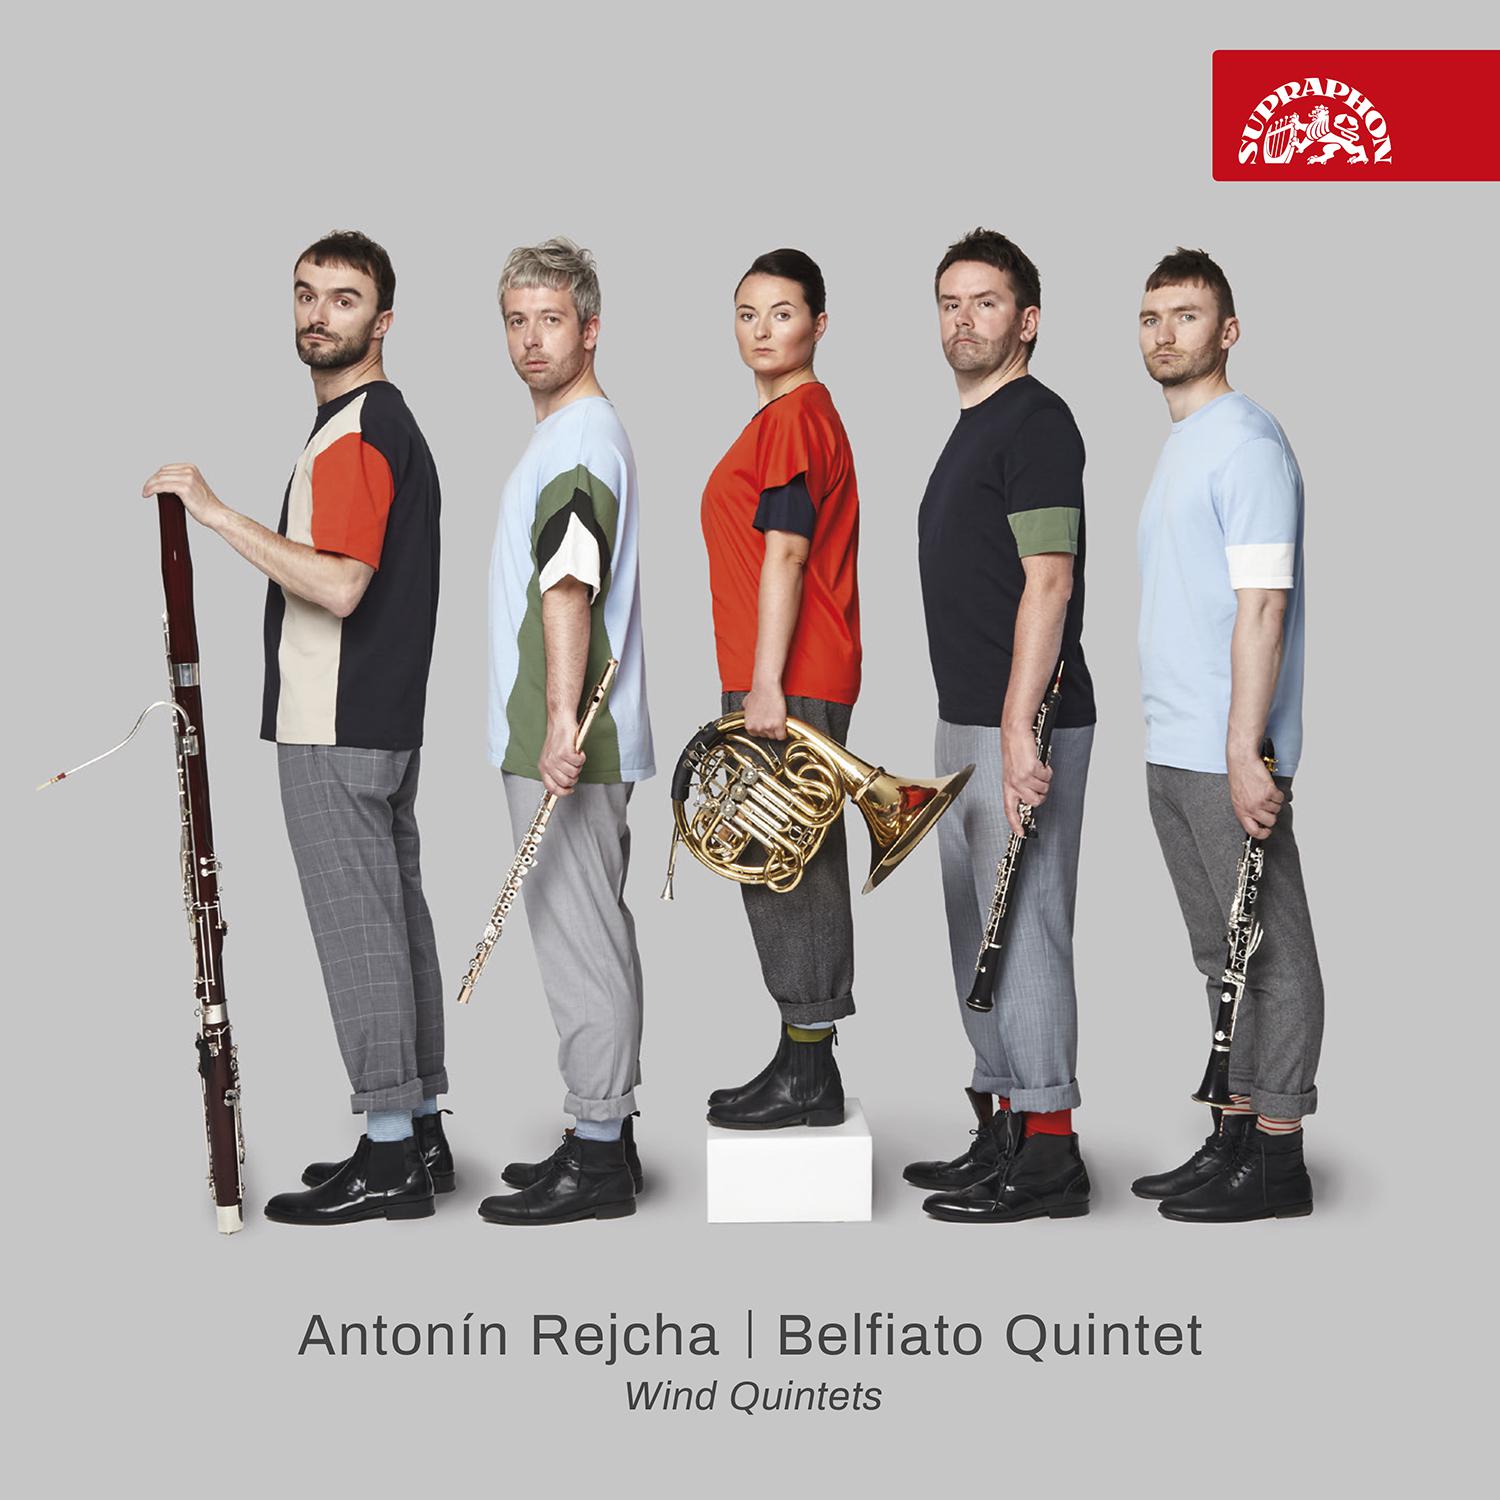 Belfiato Quintet - Wind Quintet in D Major, Op. 91 No. 3:No. 2, Adagio